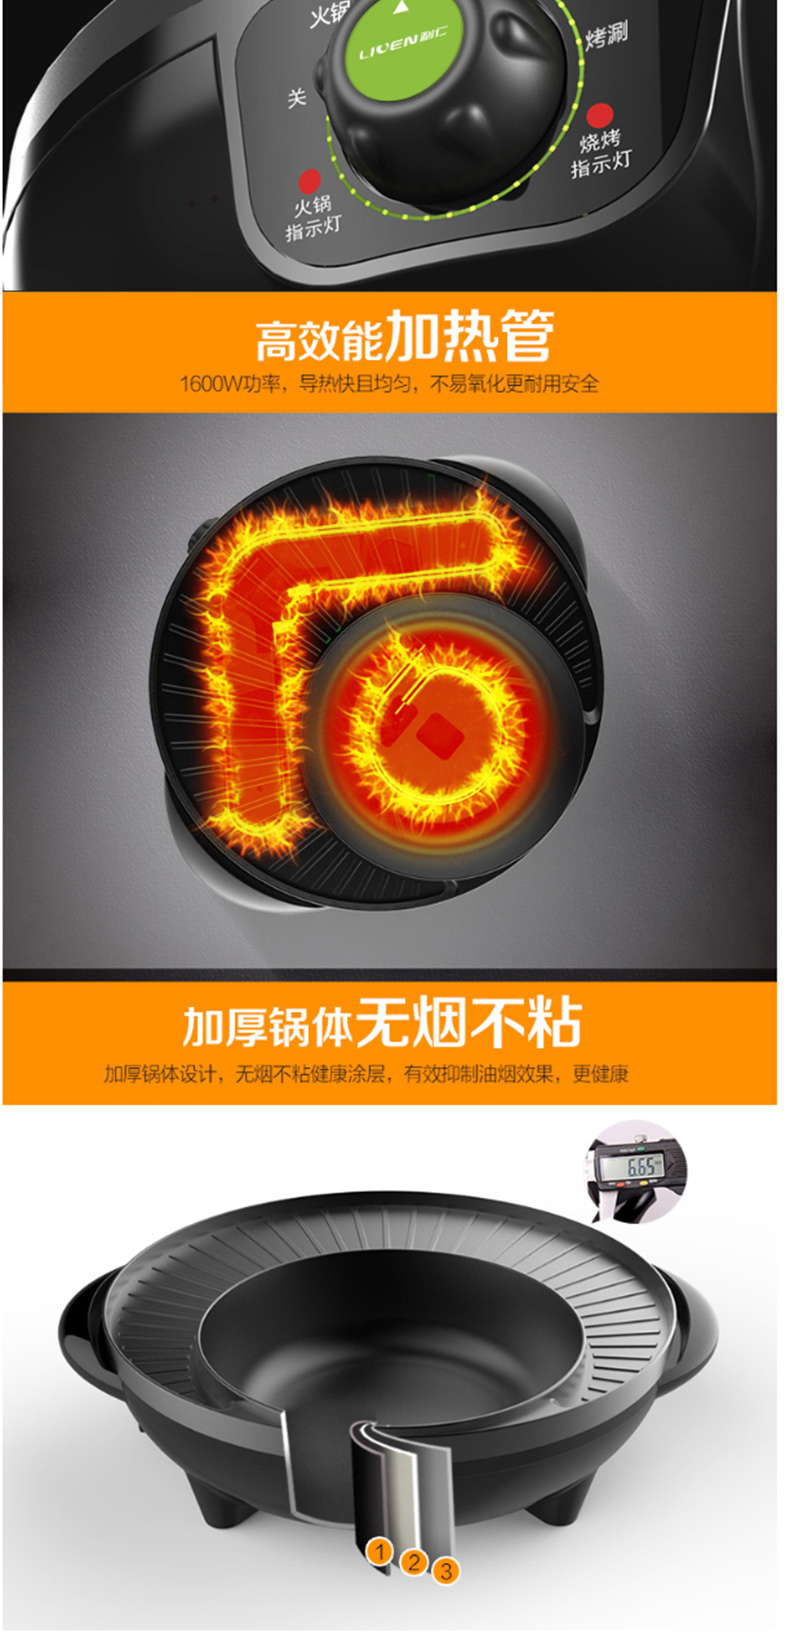 利仁 日月烤刷一体机 SK-J3201 1.8L 